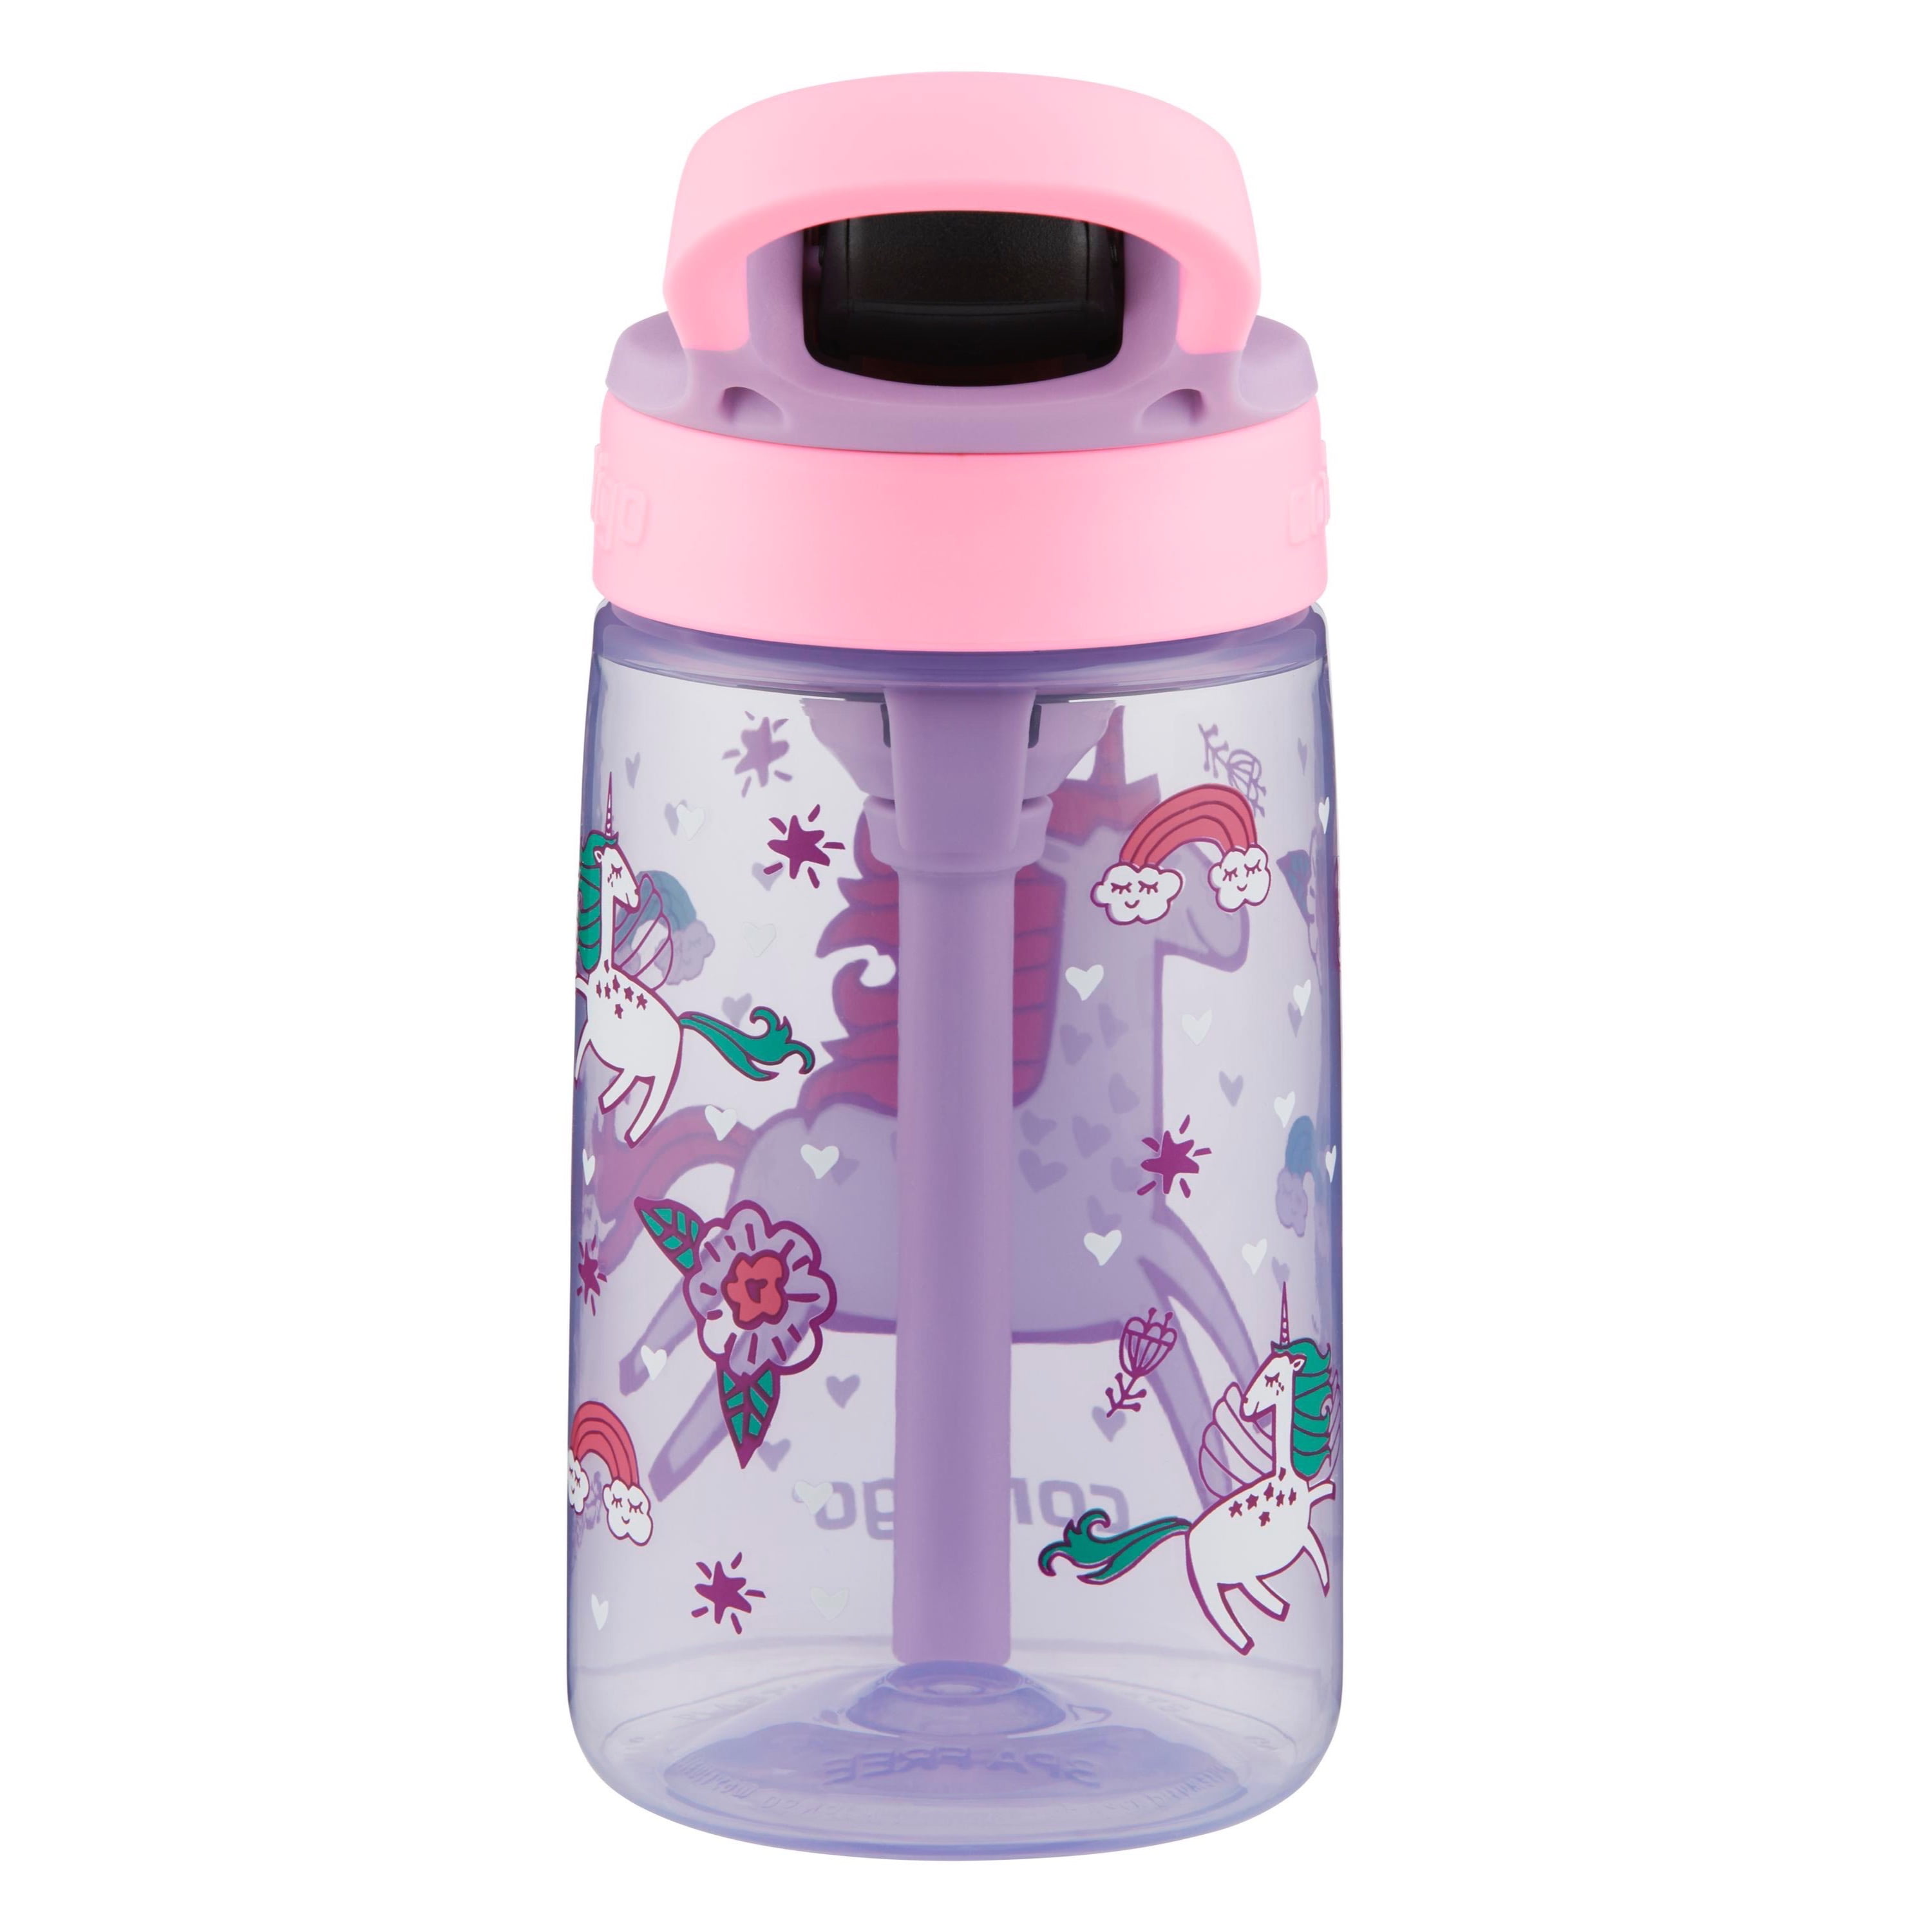 Contigo - Contigo, Kids - Water Bottle, Striker No-Spill, Petal Pink, 14  Ounce, Shop